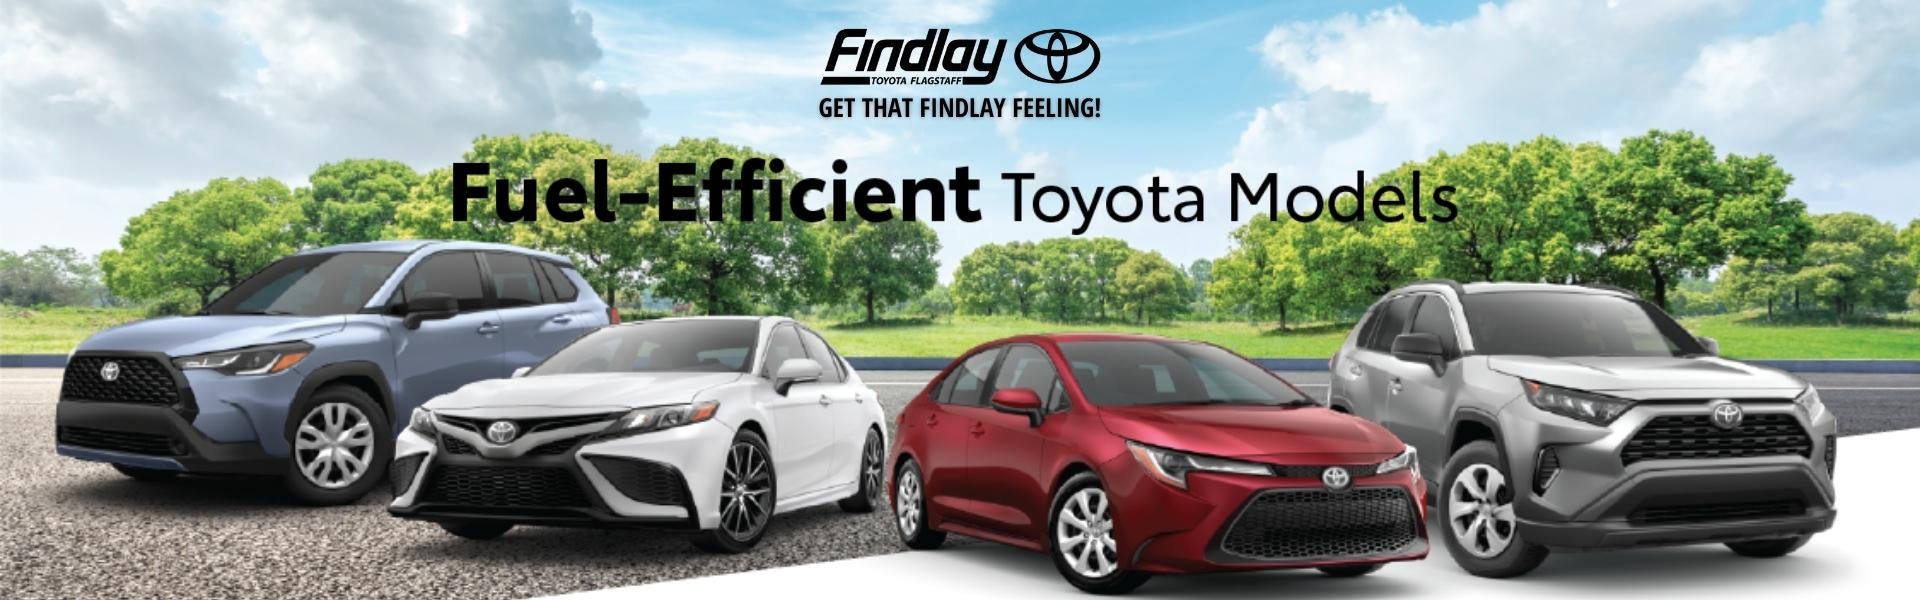 Fuel Efficient Toyota Models